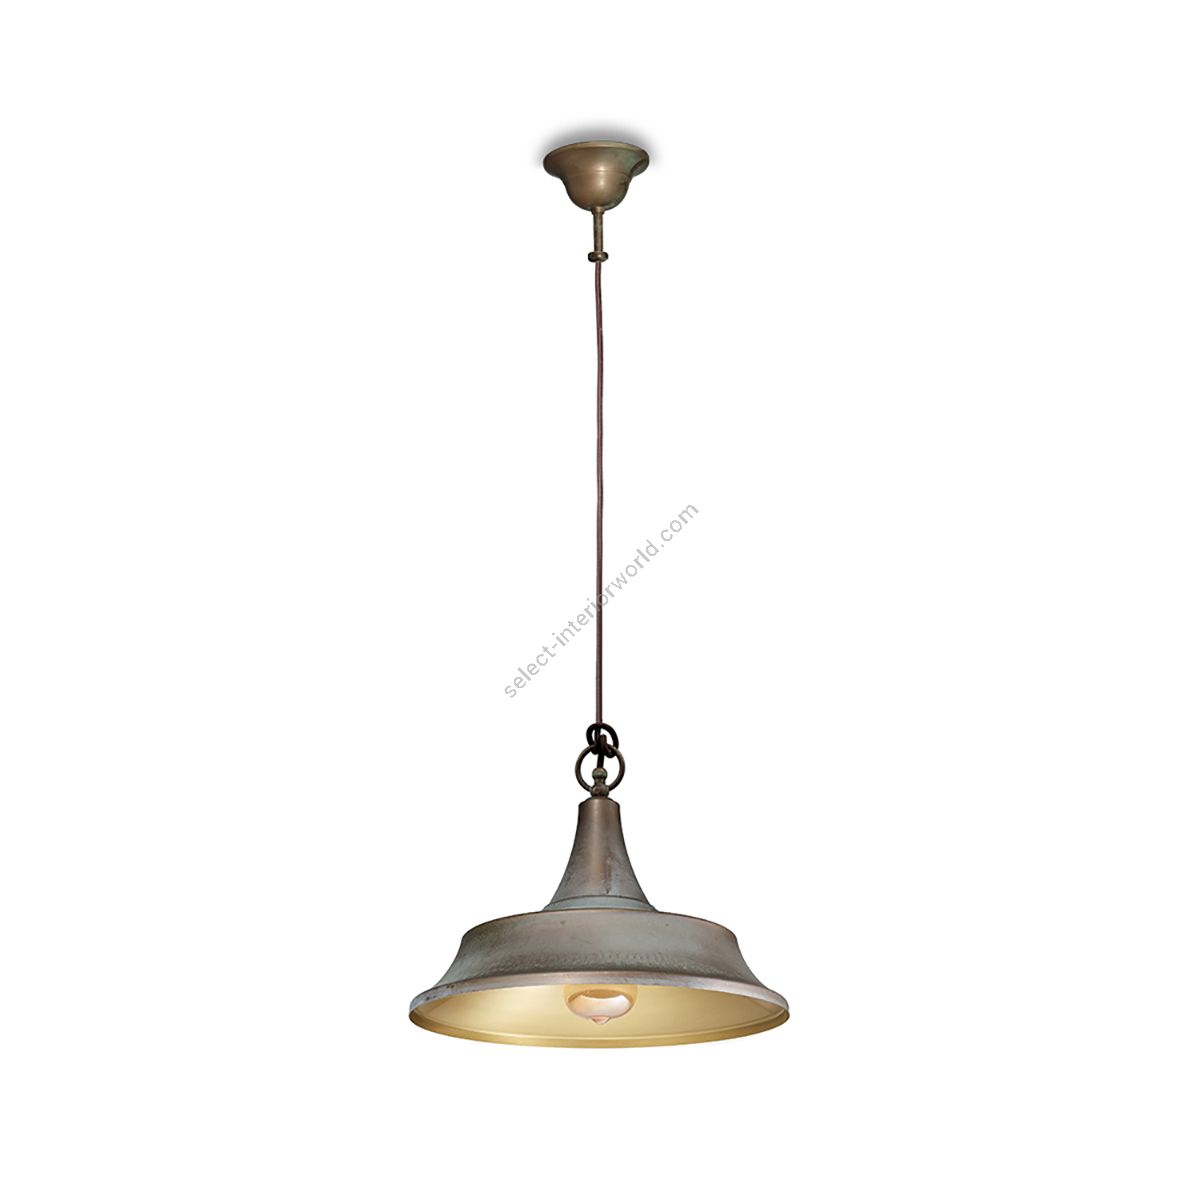 Moretti Luce / Light Indoor Pendant Lamp / Atelier 3120, 3121